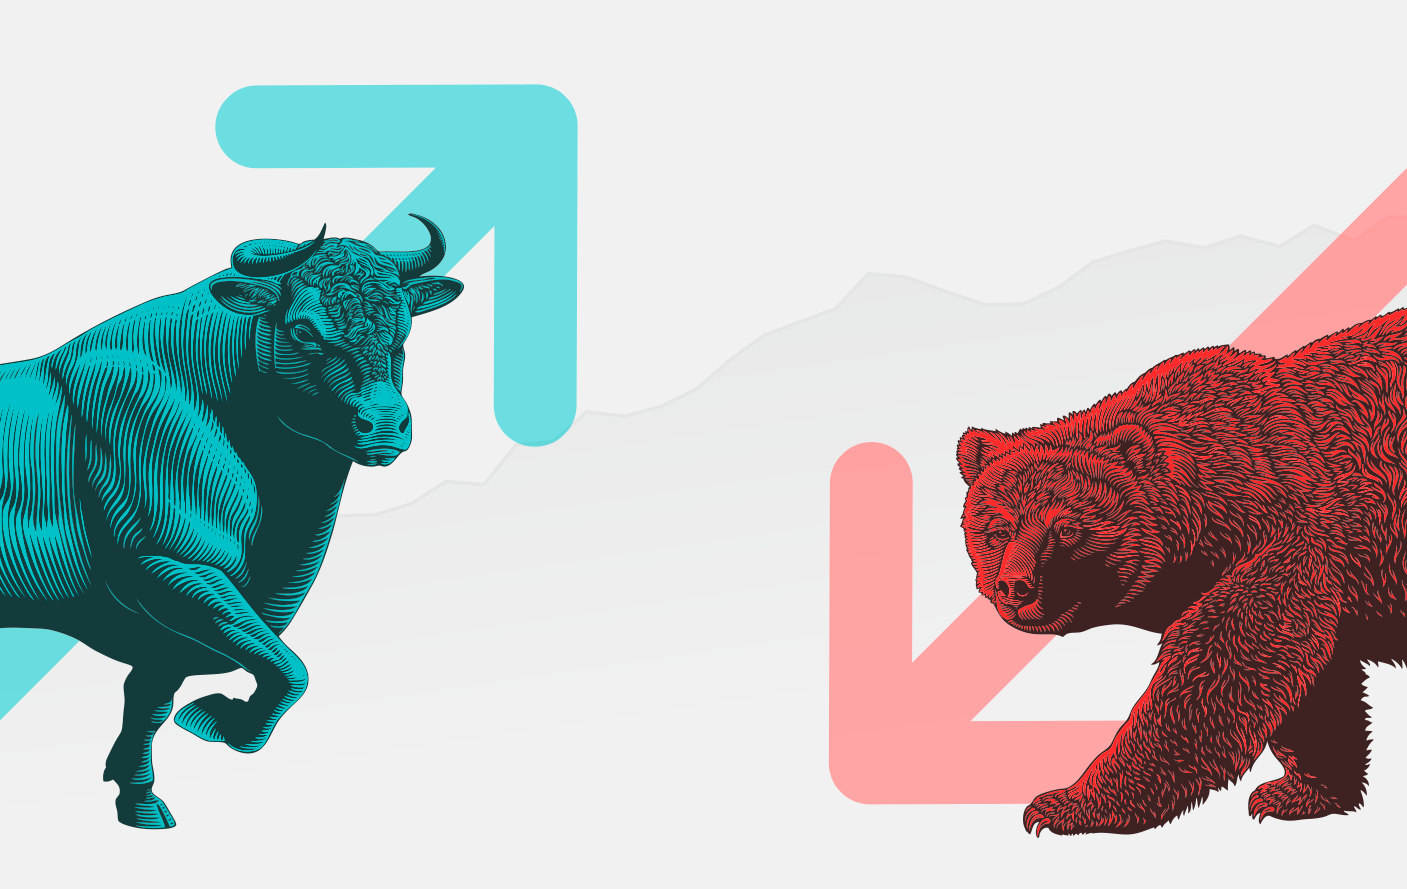 Bull market e bear market: imagem mostra um touro azul com uma seta subindo e um touro vermelho com uma seta descendo.